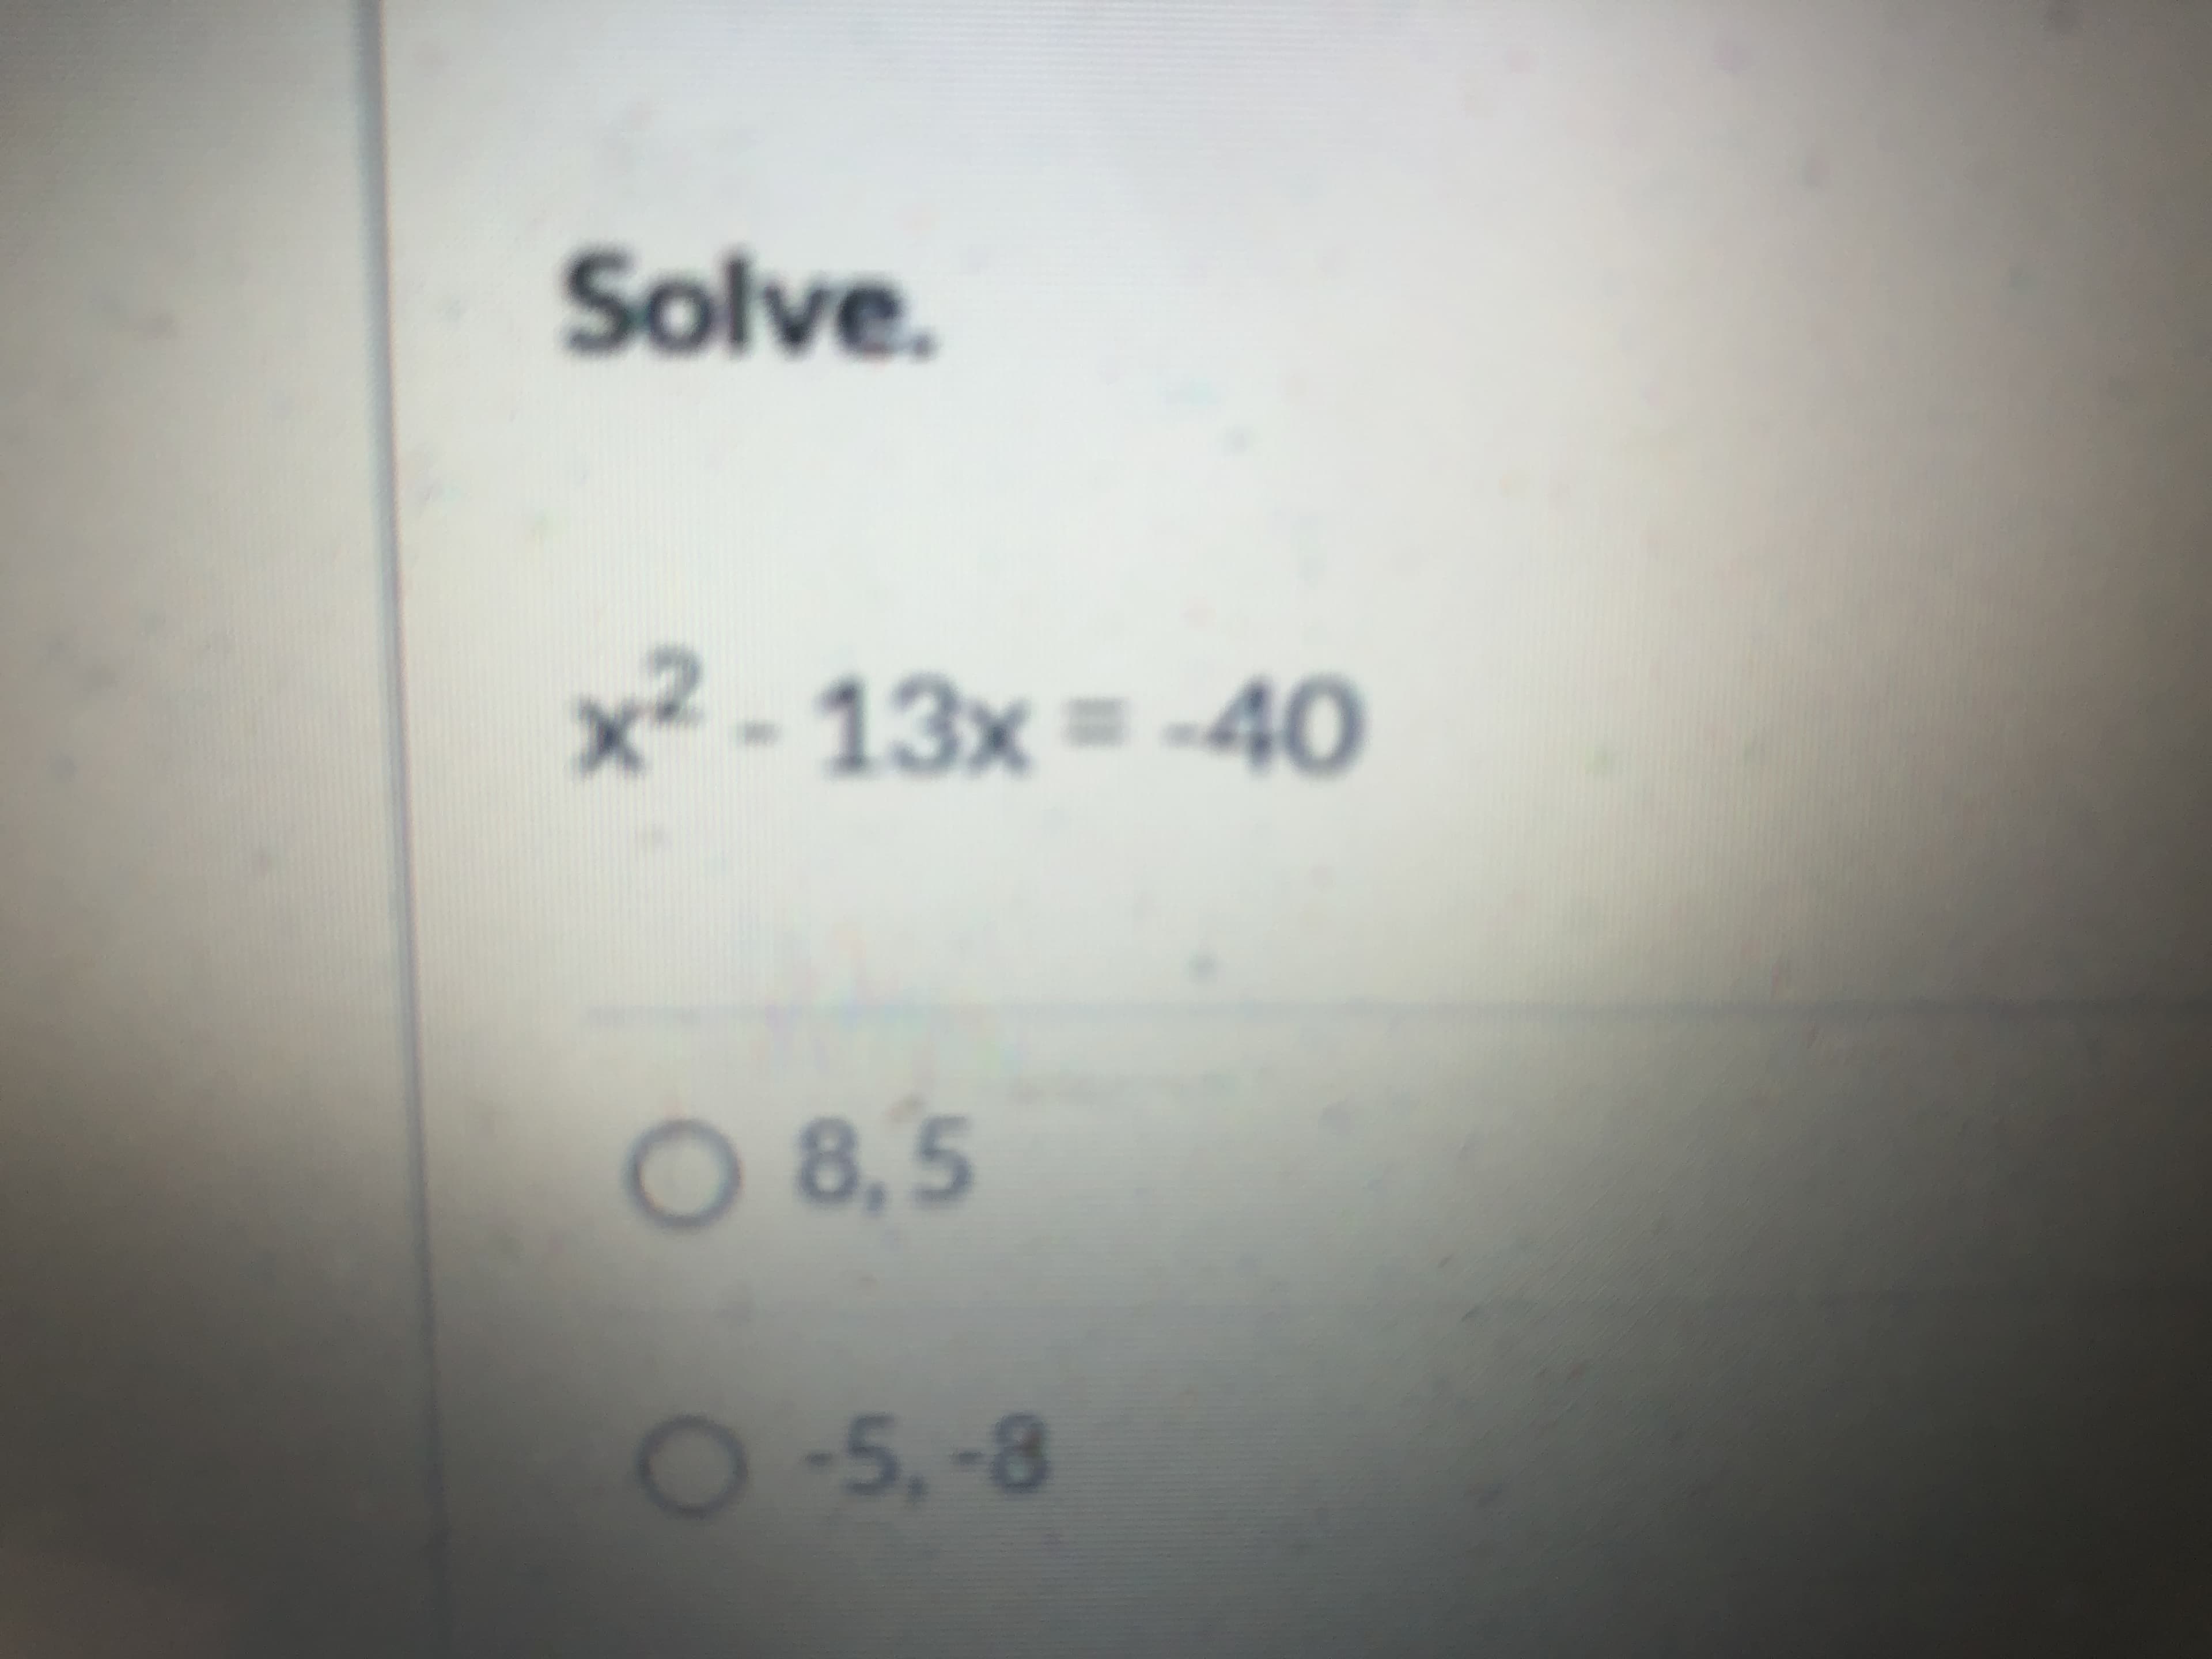 Solve.
x² - 13x = -40
O 8,5
O-5,-8
